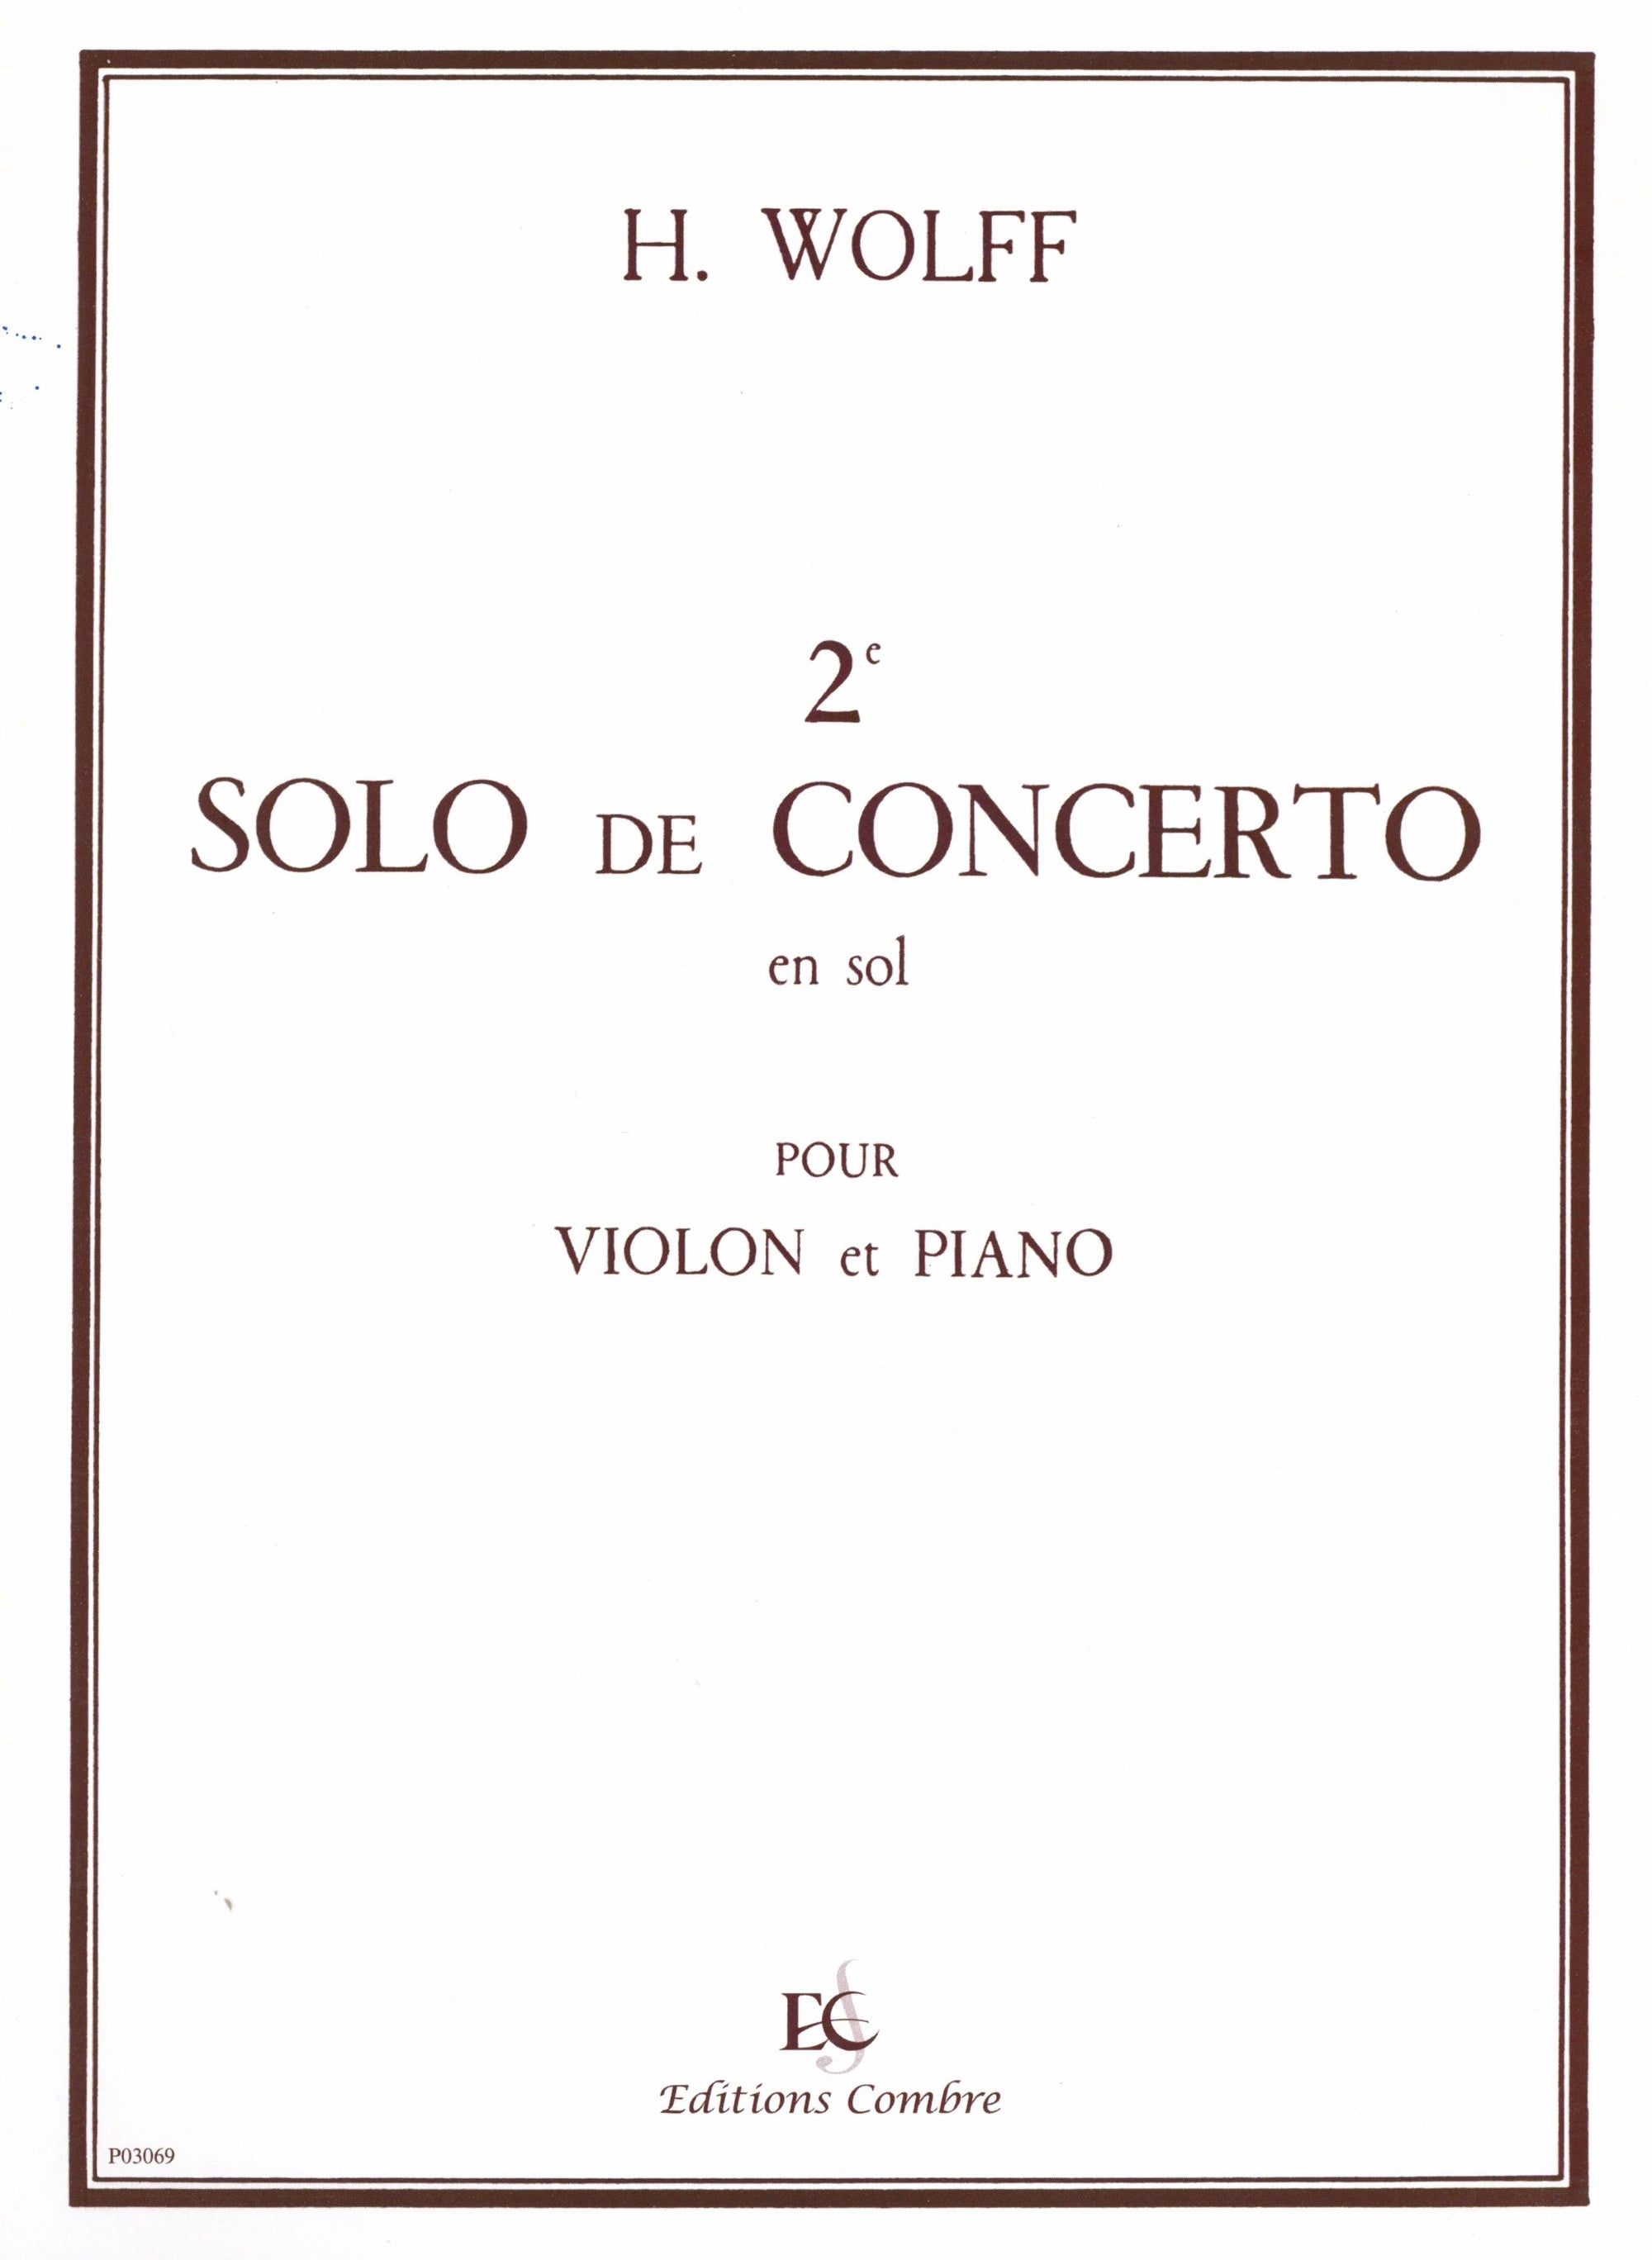 Wolff: Solo de concerto No. 2 en Sol